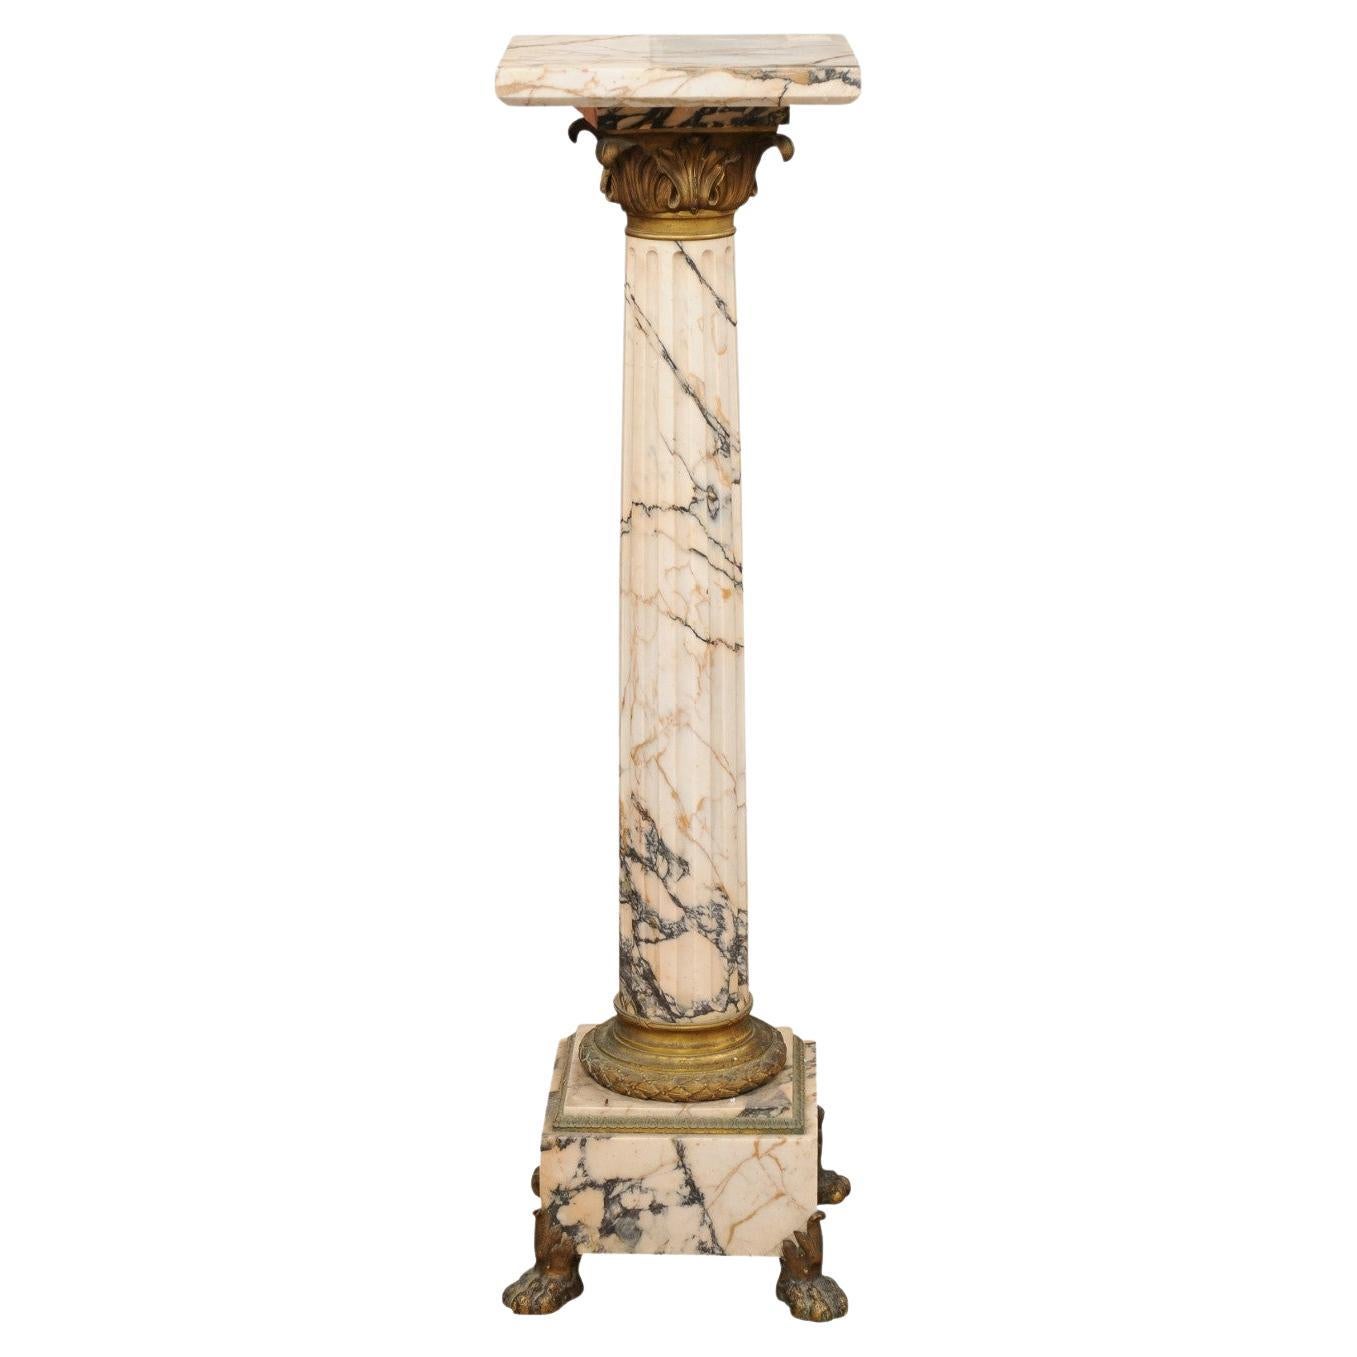 Piedistallo in marmo impero italiano dei primi del XIX secolo con dettagli in bronzo dorato